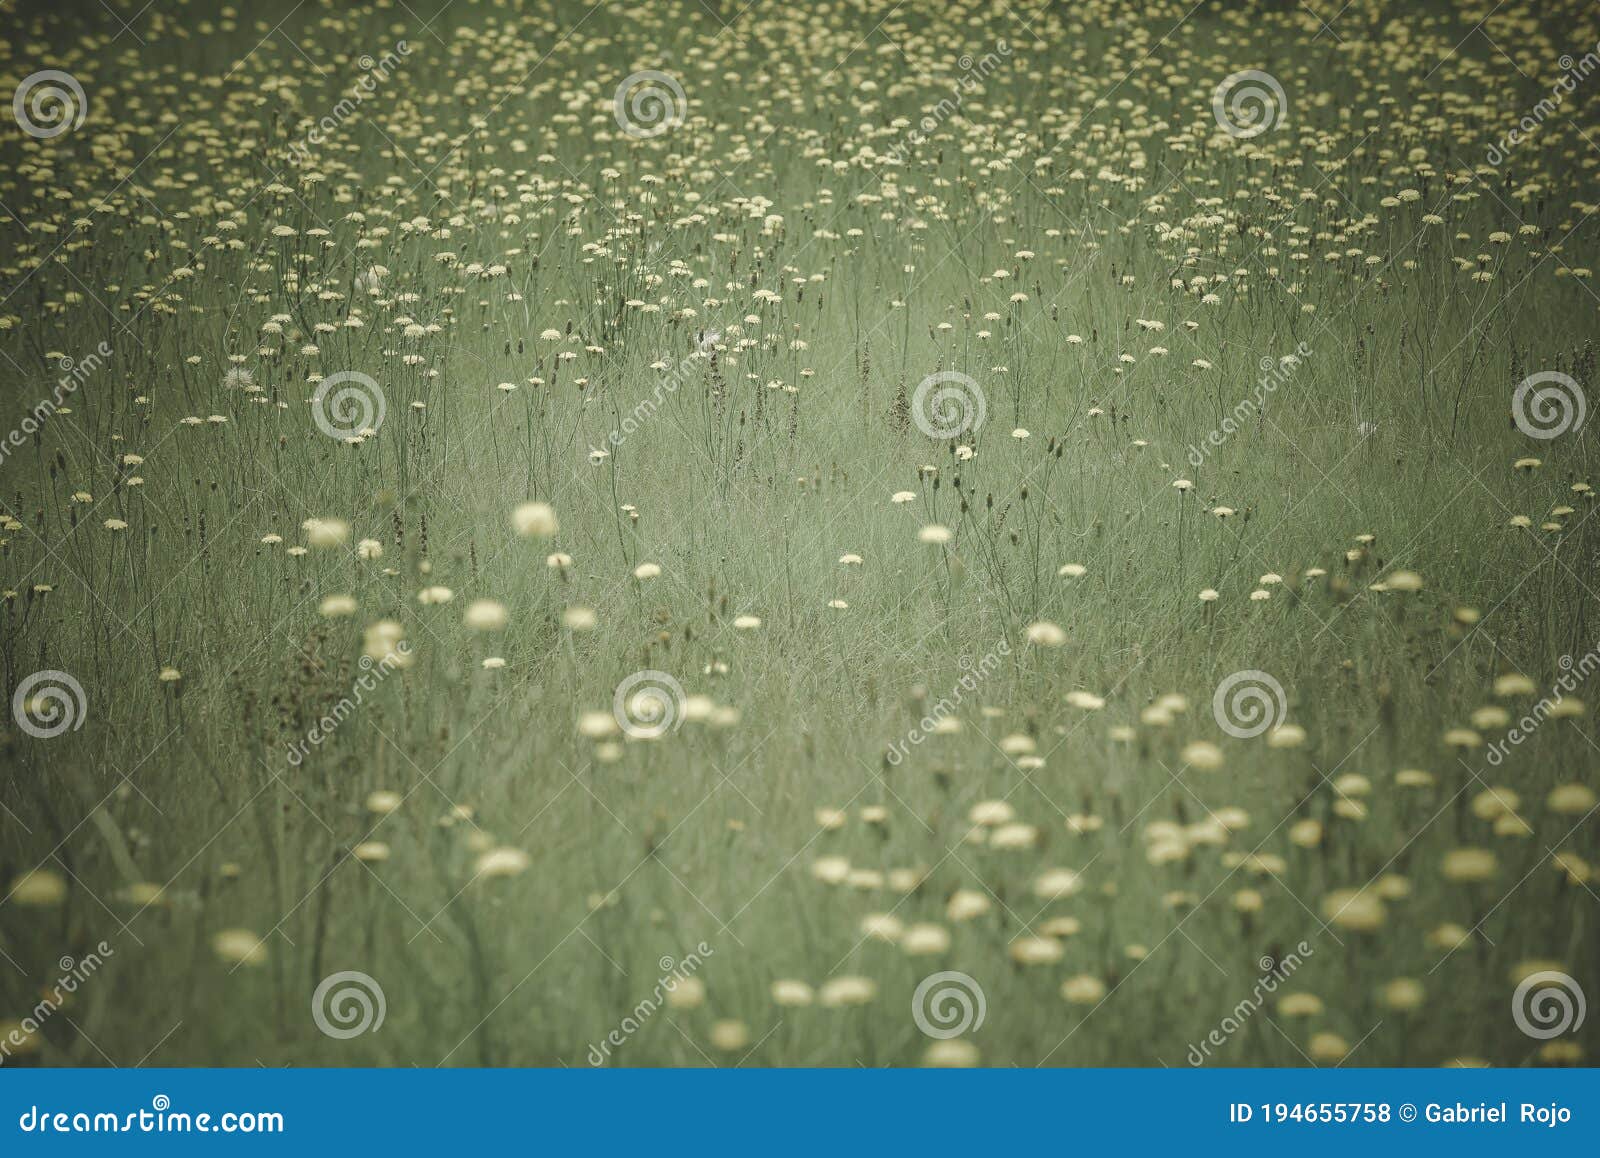 flowery landscape in the plain,